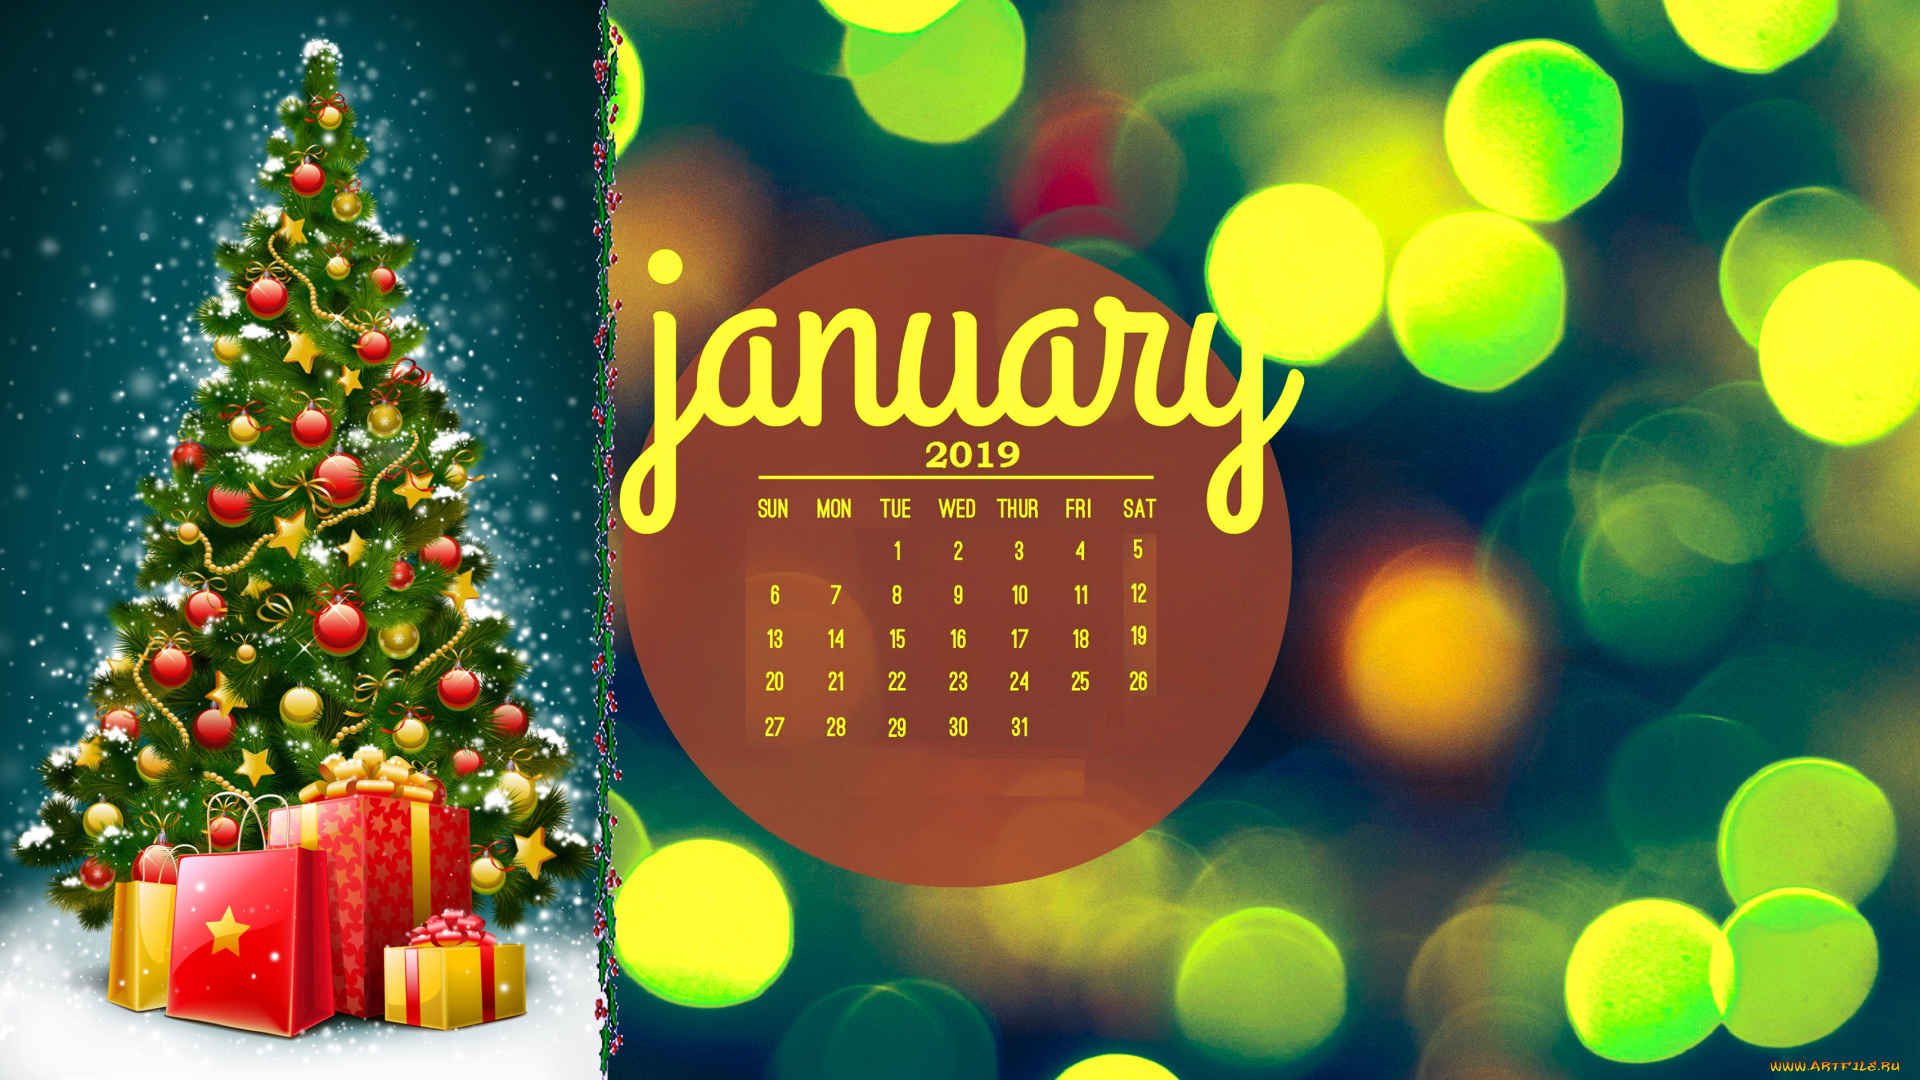 календари, праздники, , салюты, шар, елка, игрушка